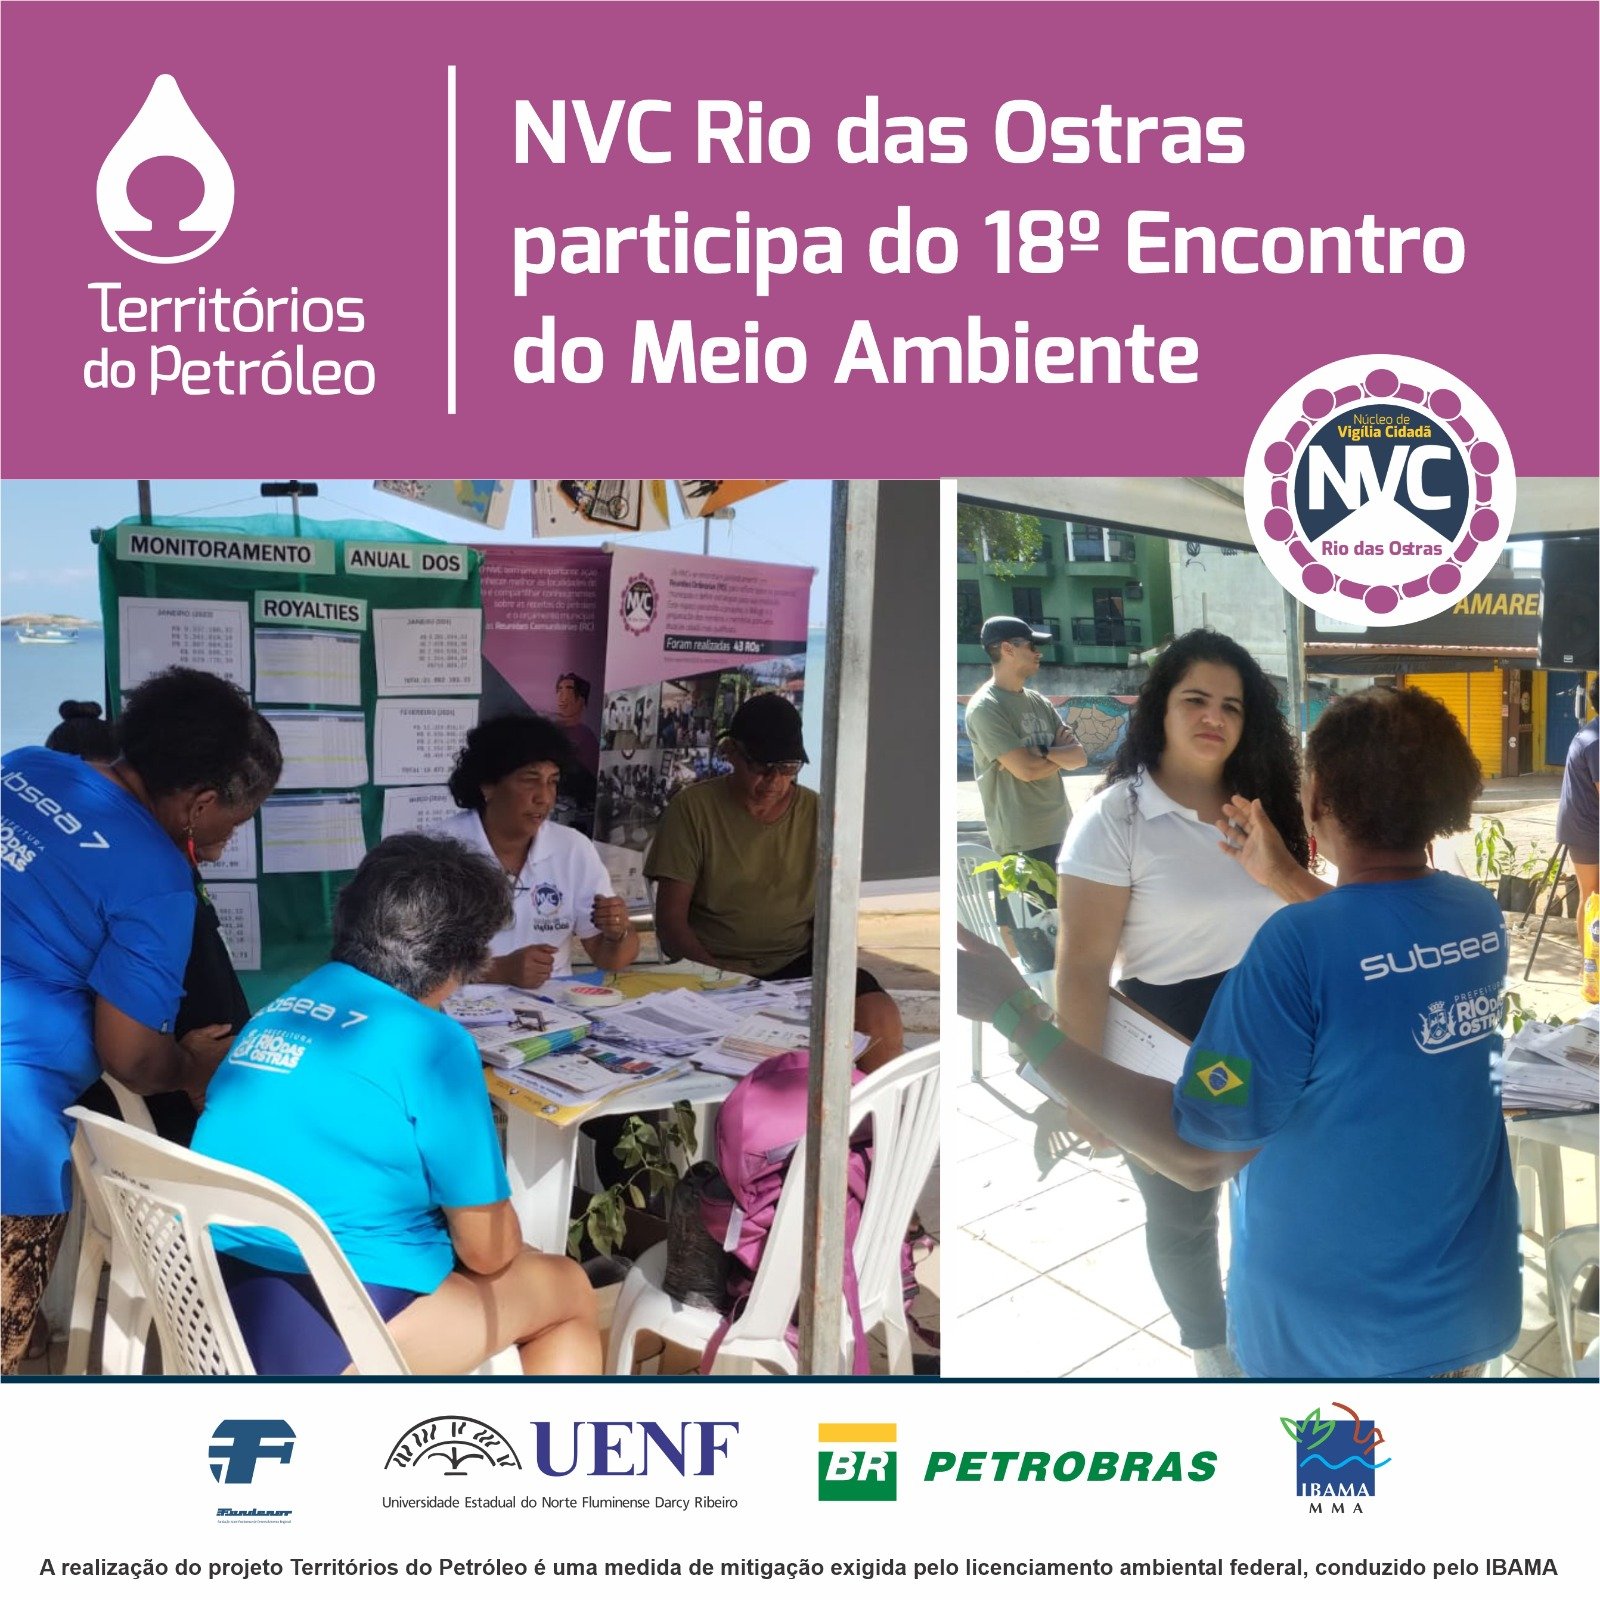 NVC Rio das Ostras participa do 18º Encontro do Meio Ambiente